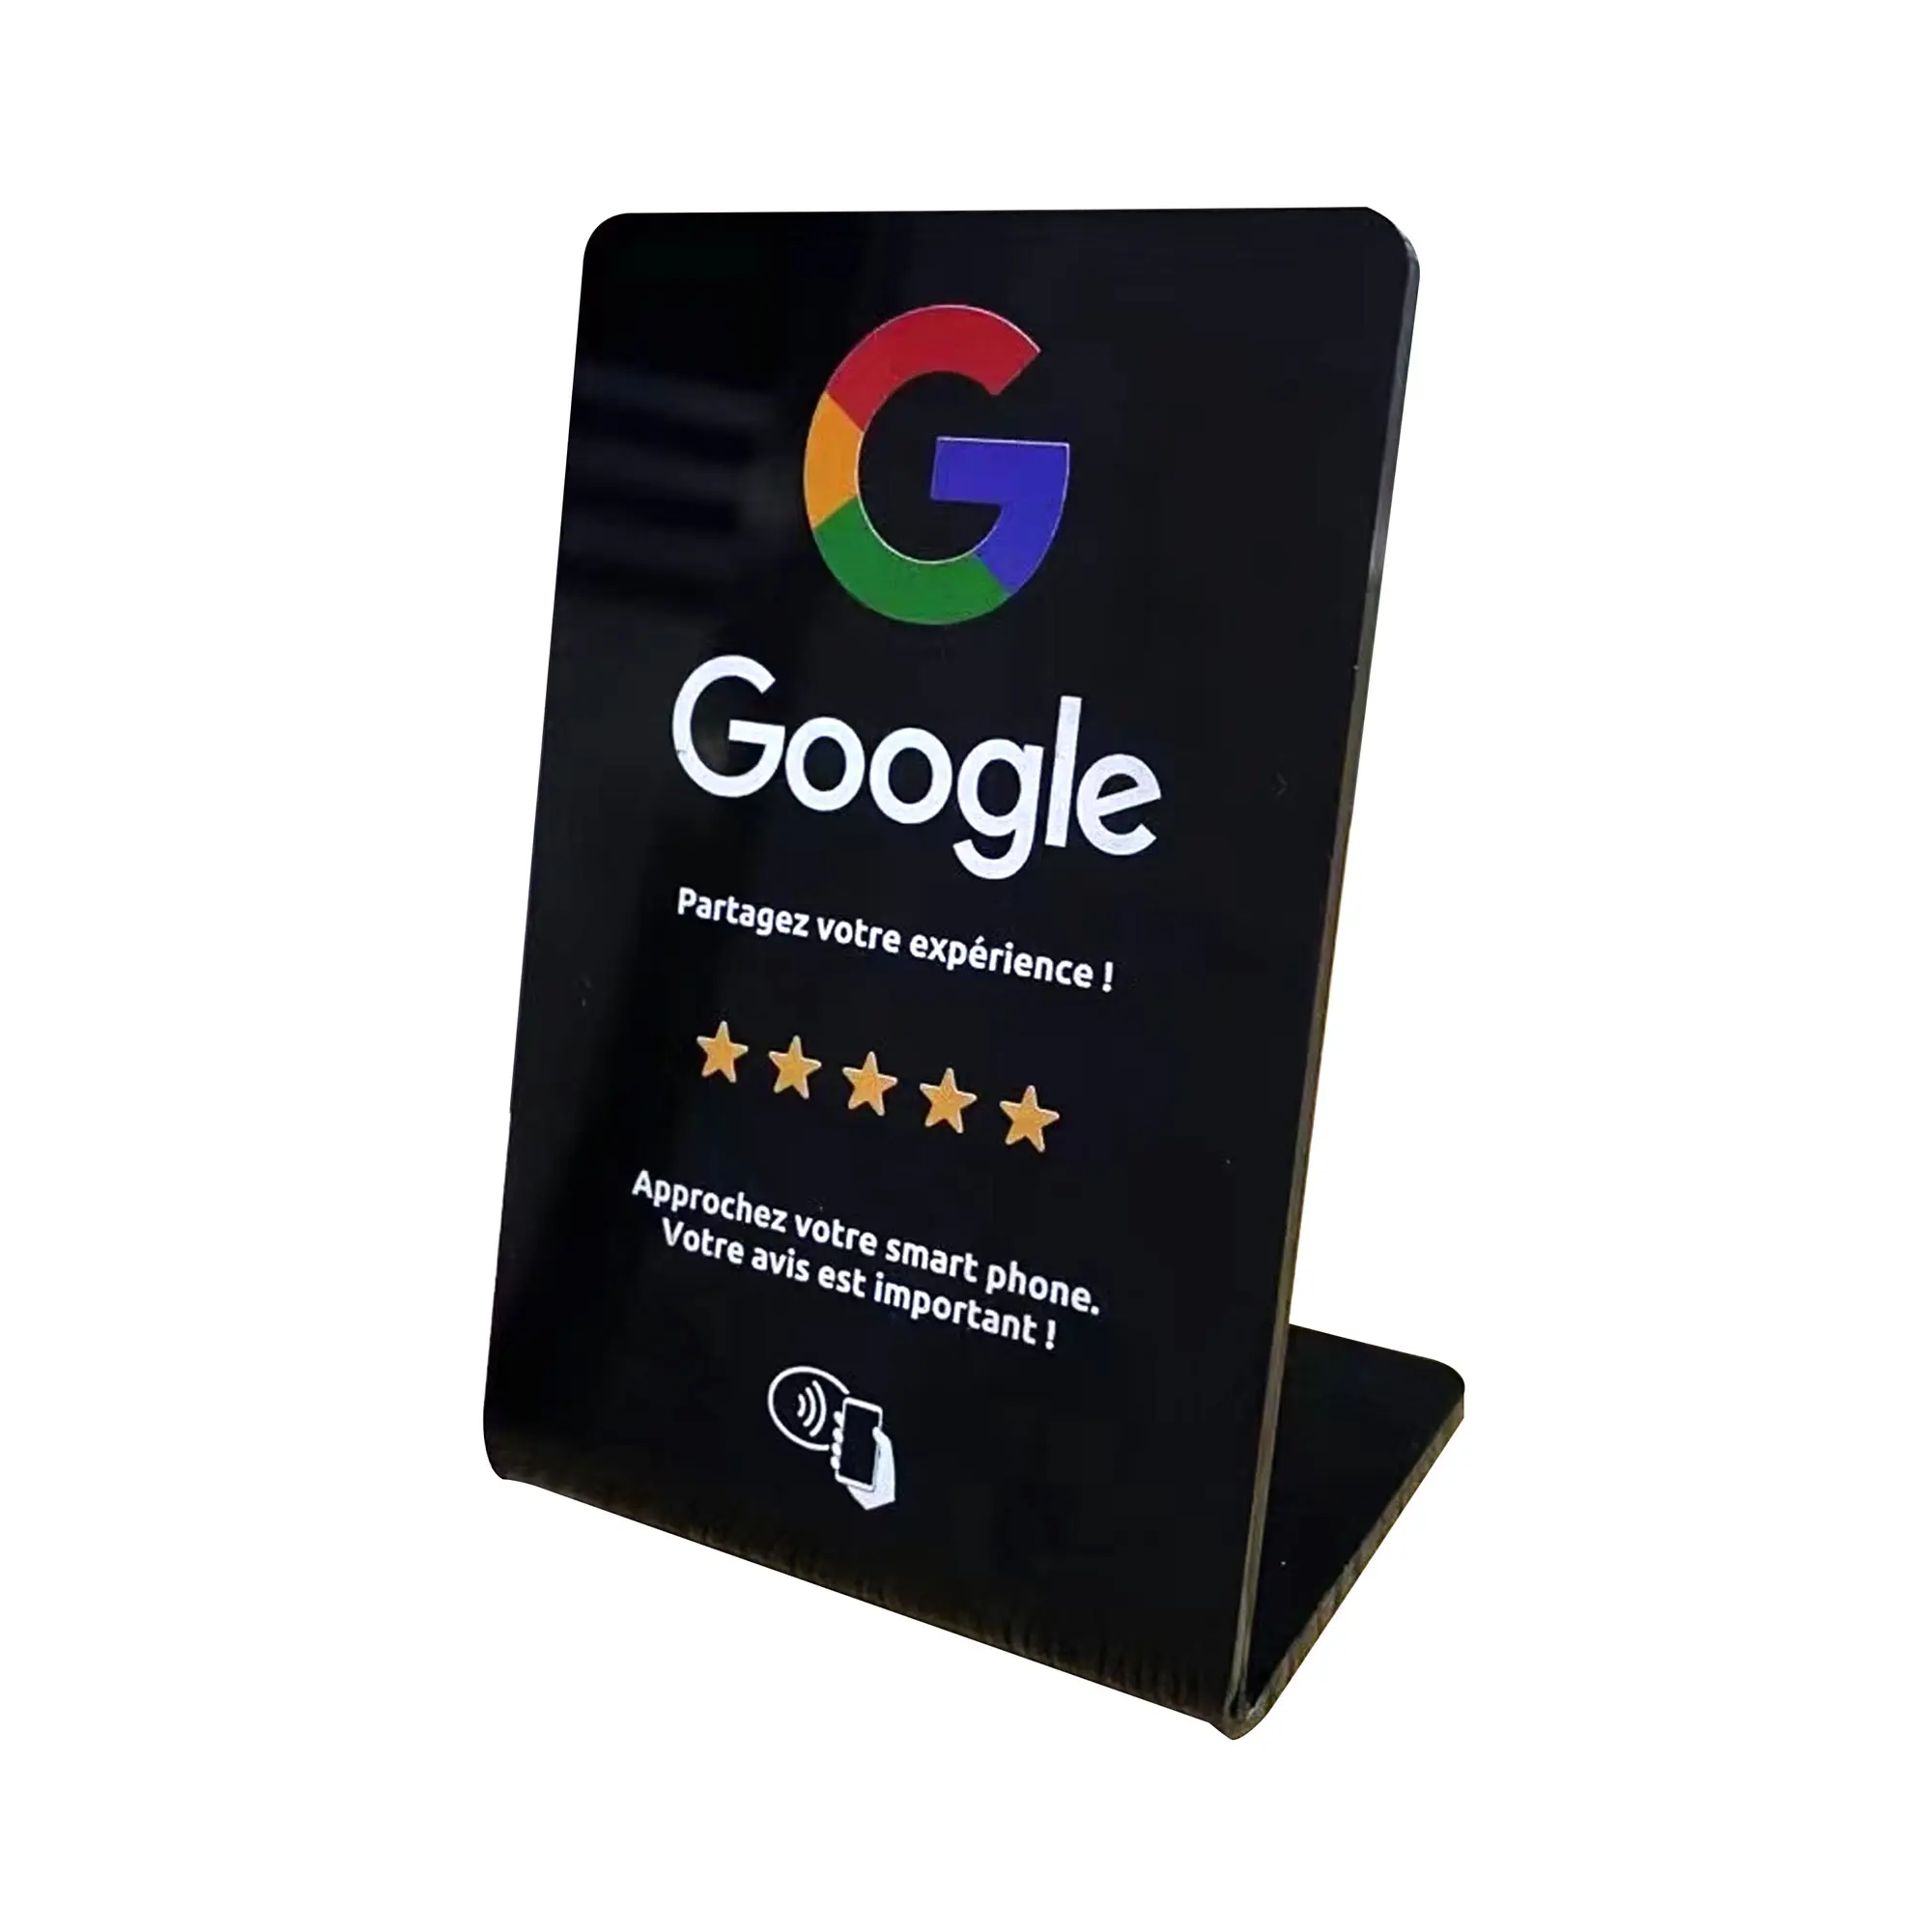 क्यूआर कोड संपर्क रहित 213 215 टैप ऐक्रेलिक डिस्प्ले स्टैंड कार्ड के साथ अनुकूलन योग्य Google समीक्षा एनएफसी स्टैंड कार्ड